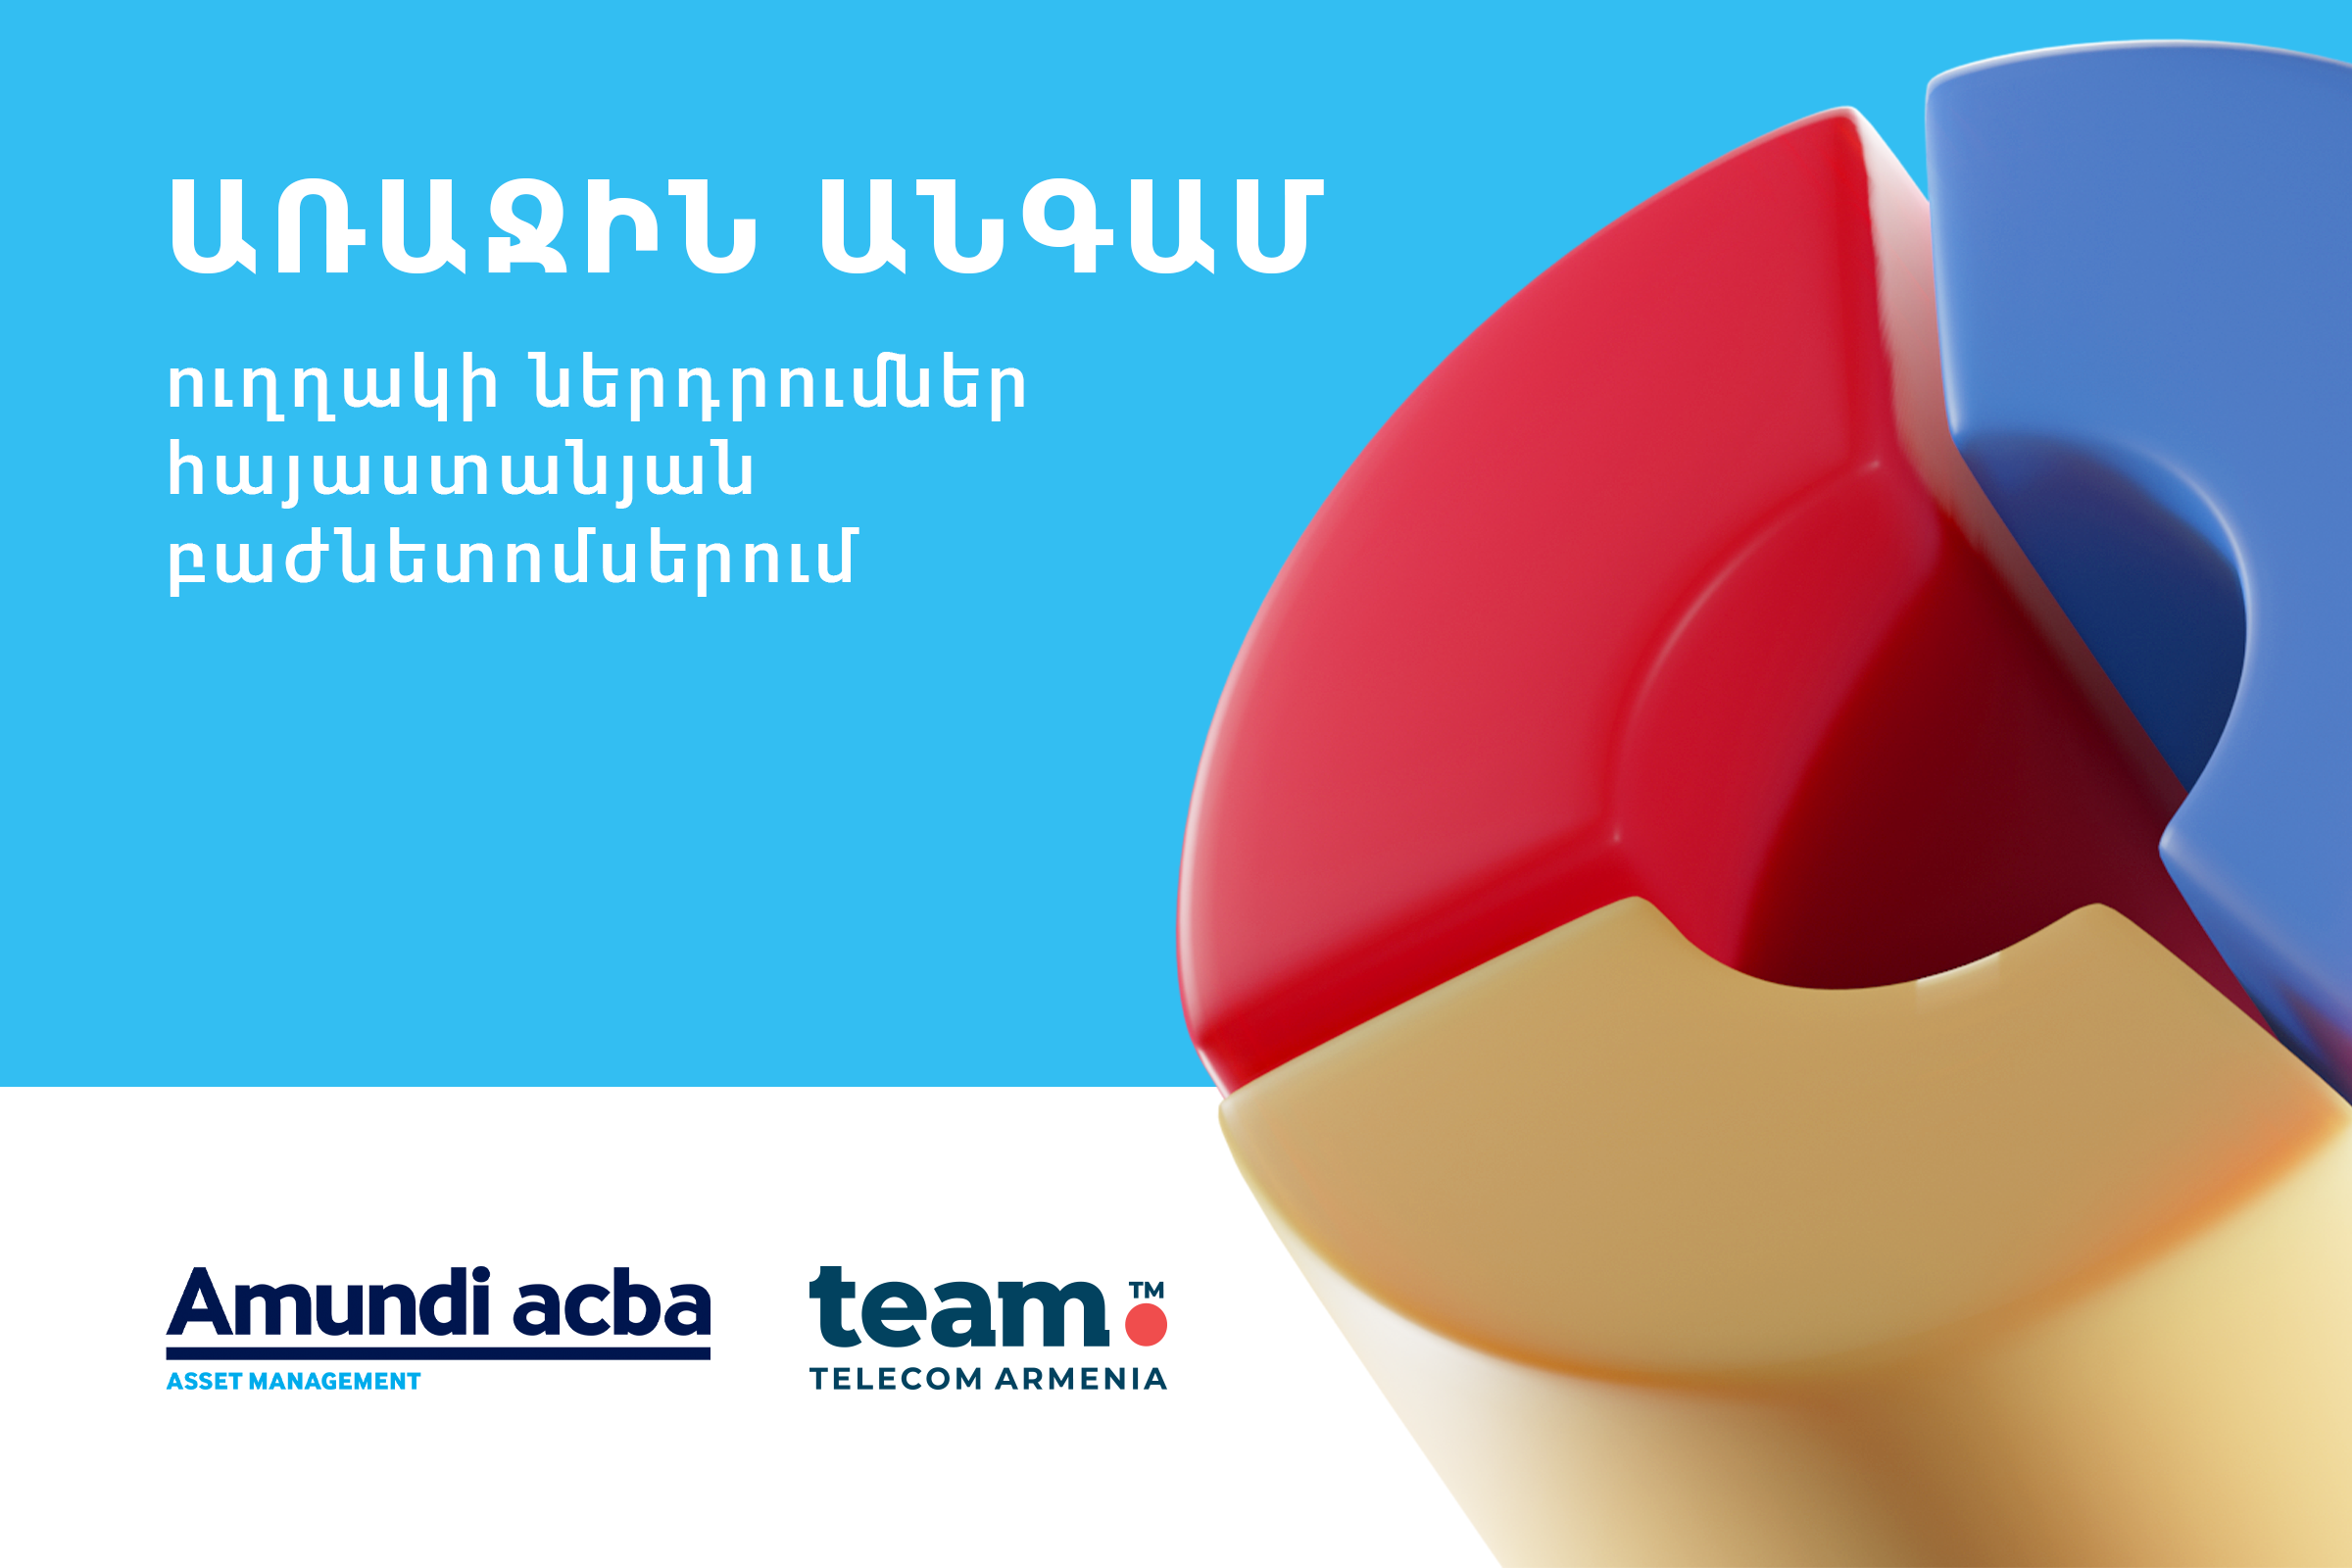 Ամունդի-Ակբան դարձել է Team Telecom Armenia-ի բաժնետեր